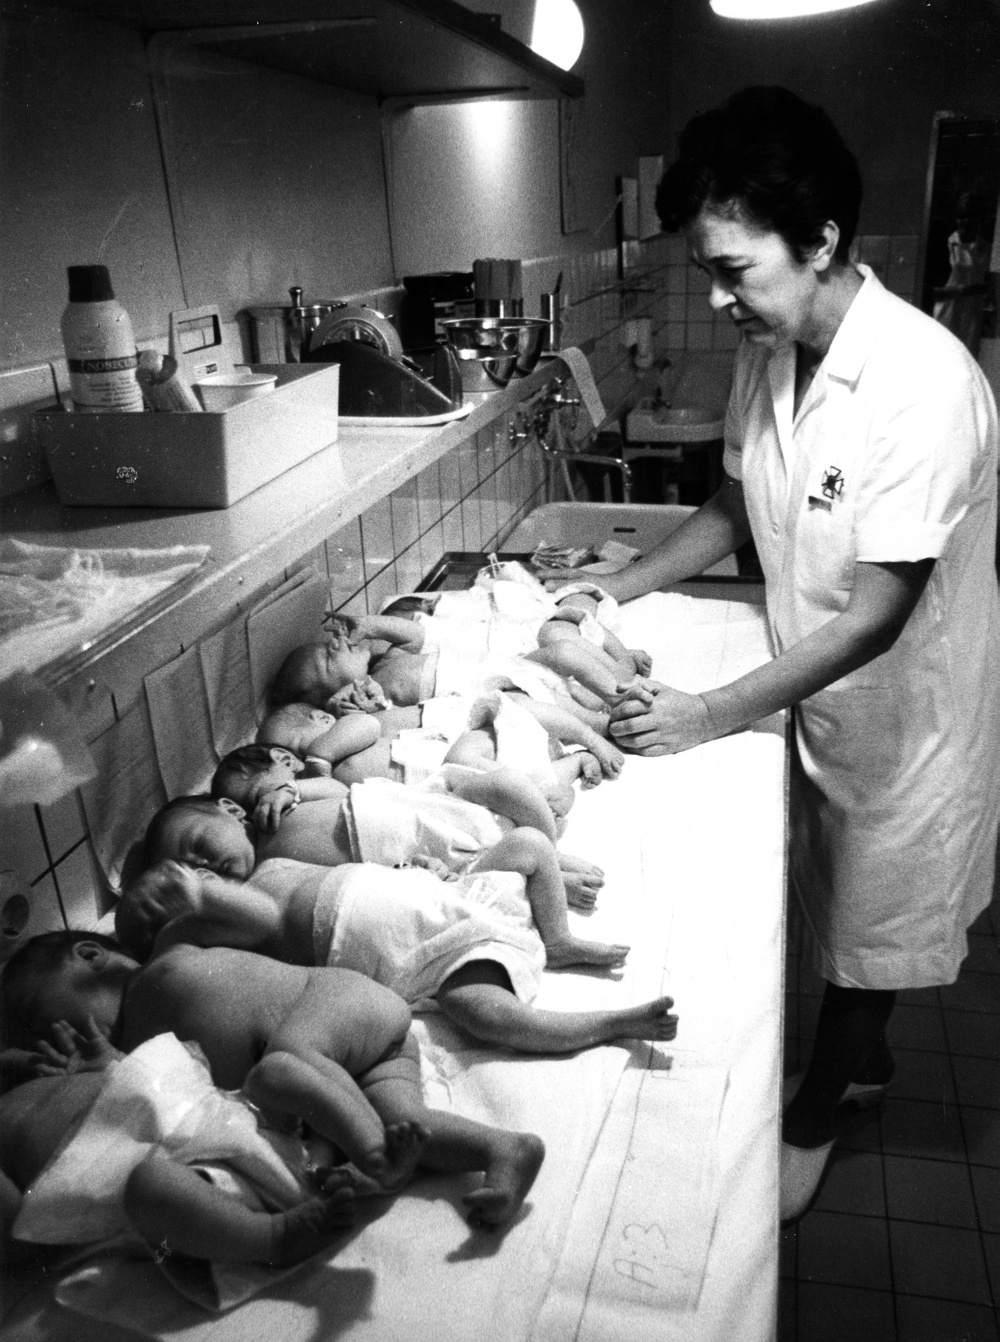 B 3683. Spädbarn i tvättkö på Ängelholms sjukhus. 
Fotograf okänd. Ur Region Skånes medicinhistoriska samling
